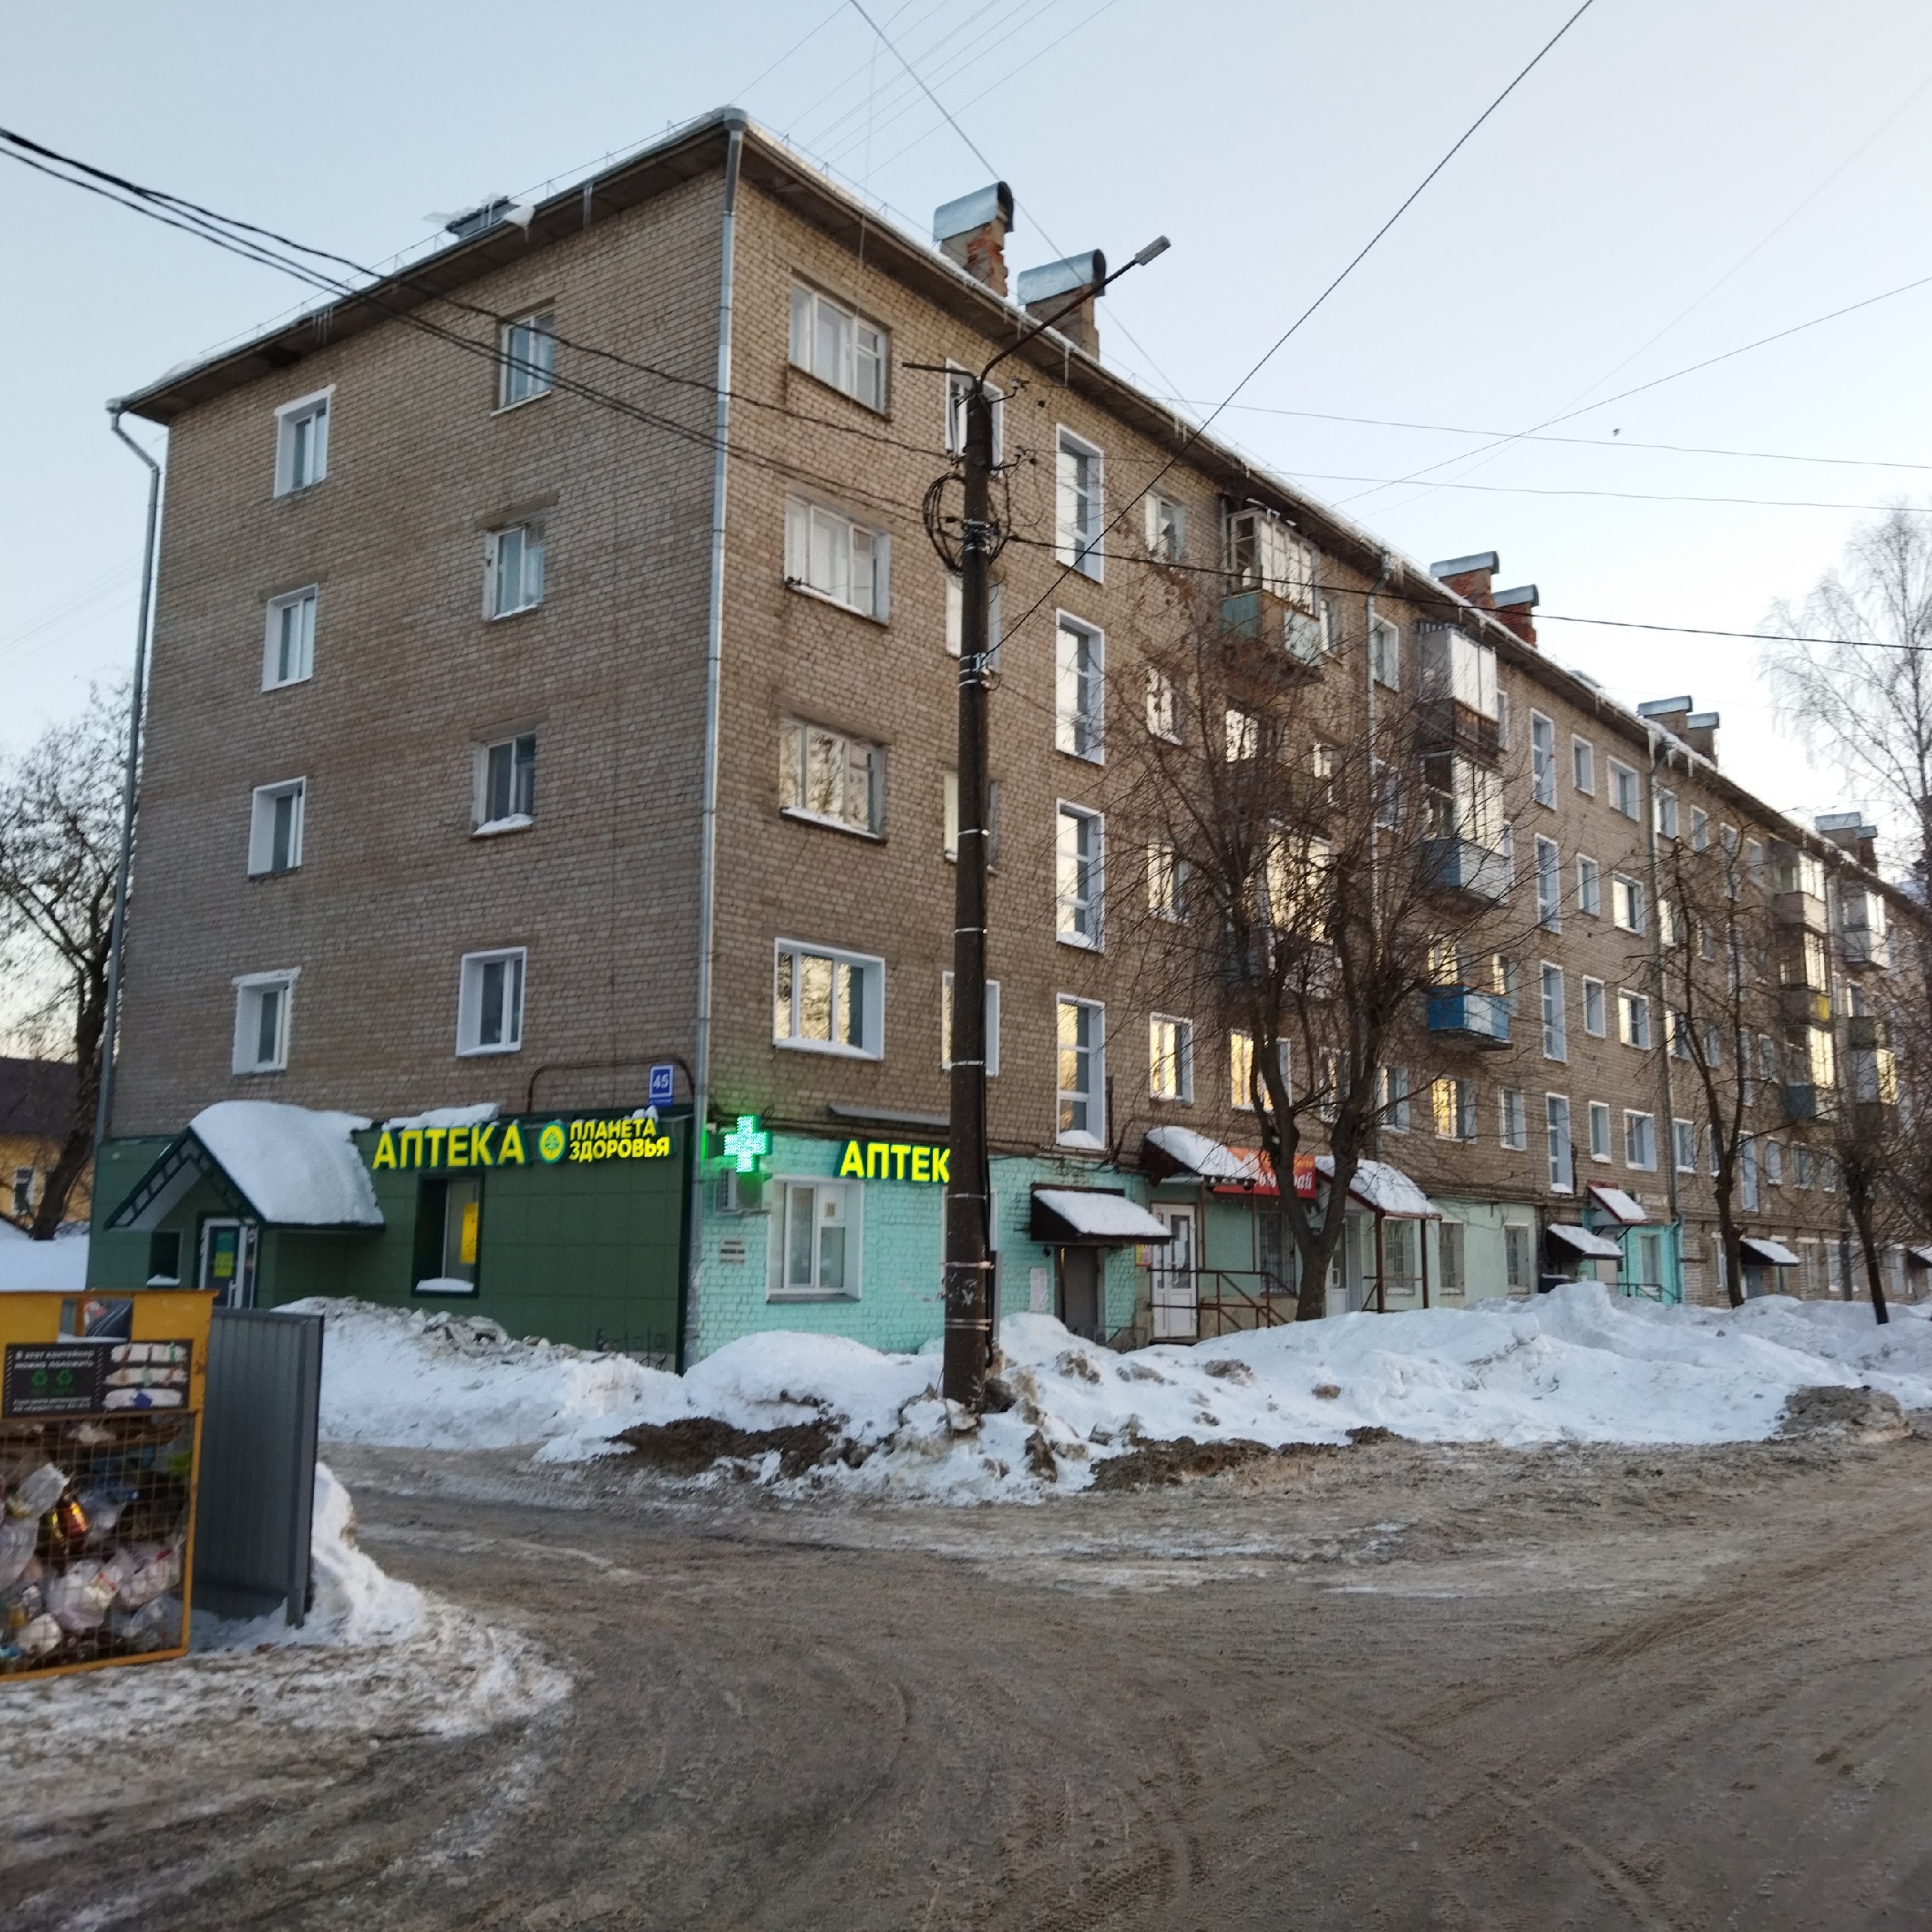 В Кирове фасады 29 домов отремонтируют за 14 миллионов рублей к 650-летию города